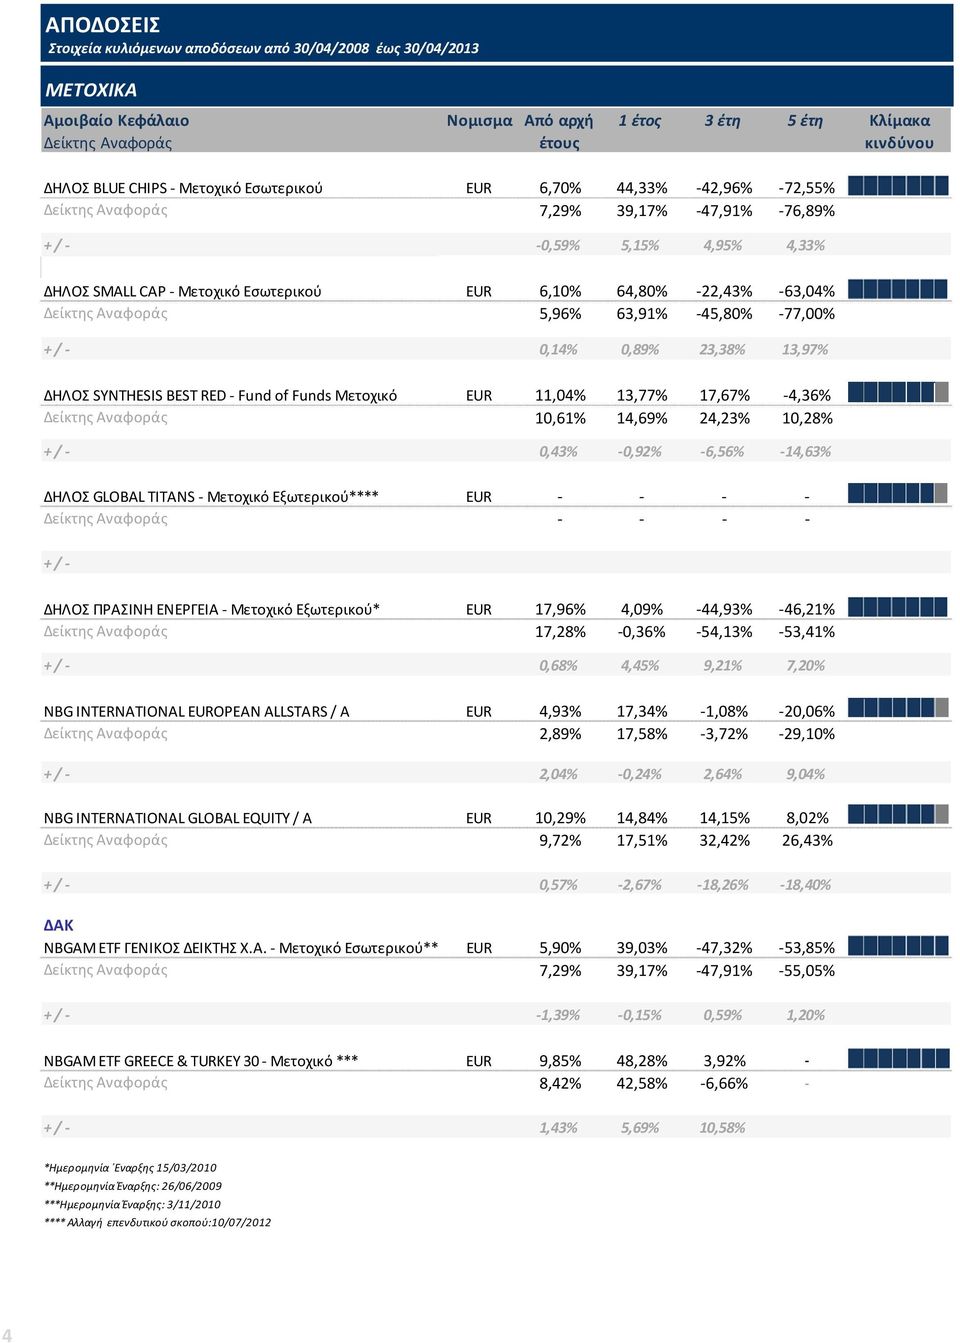 0,89% 23,38% 13,97% ΔΗΛΟΣ SYNTHESIS BEST RED - Fund of Funds Μετοχικό 11,04% 13,77% 17,67% -4,36% 10,61% 14,69% 24,23% 10,28% + / - 0,43% -0,92% -6,56% -14,63% ΔΗΛΟΣ GLOBAL TITANS - Μετοχικό